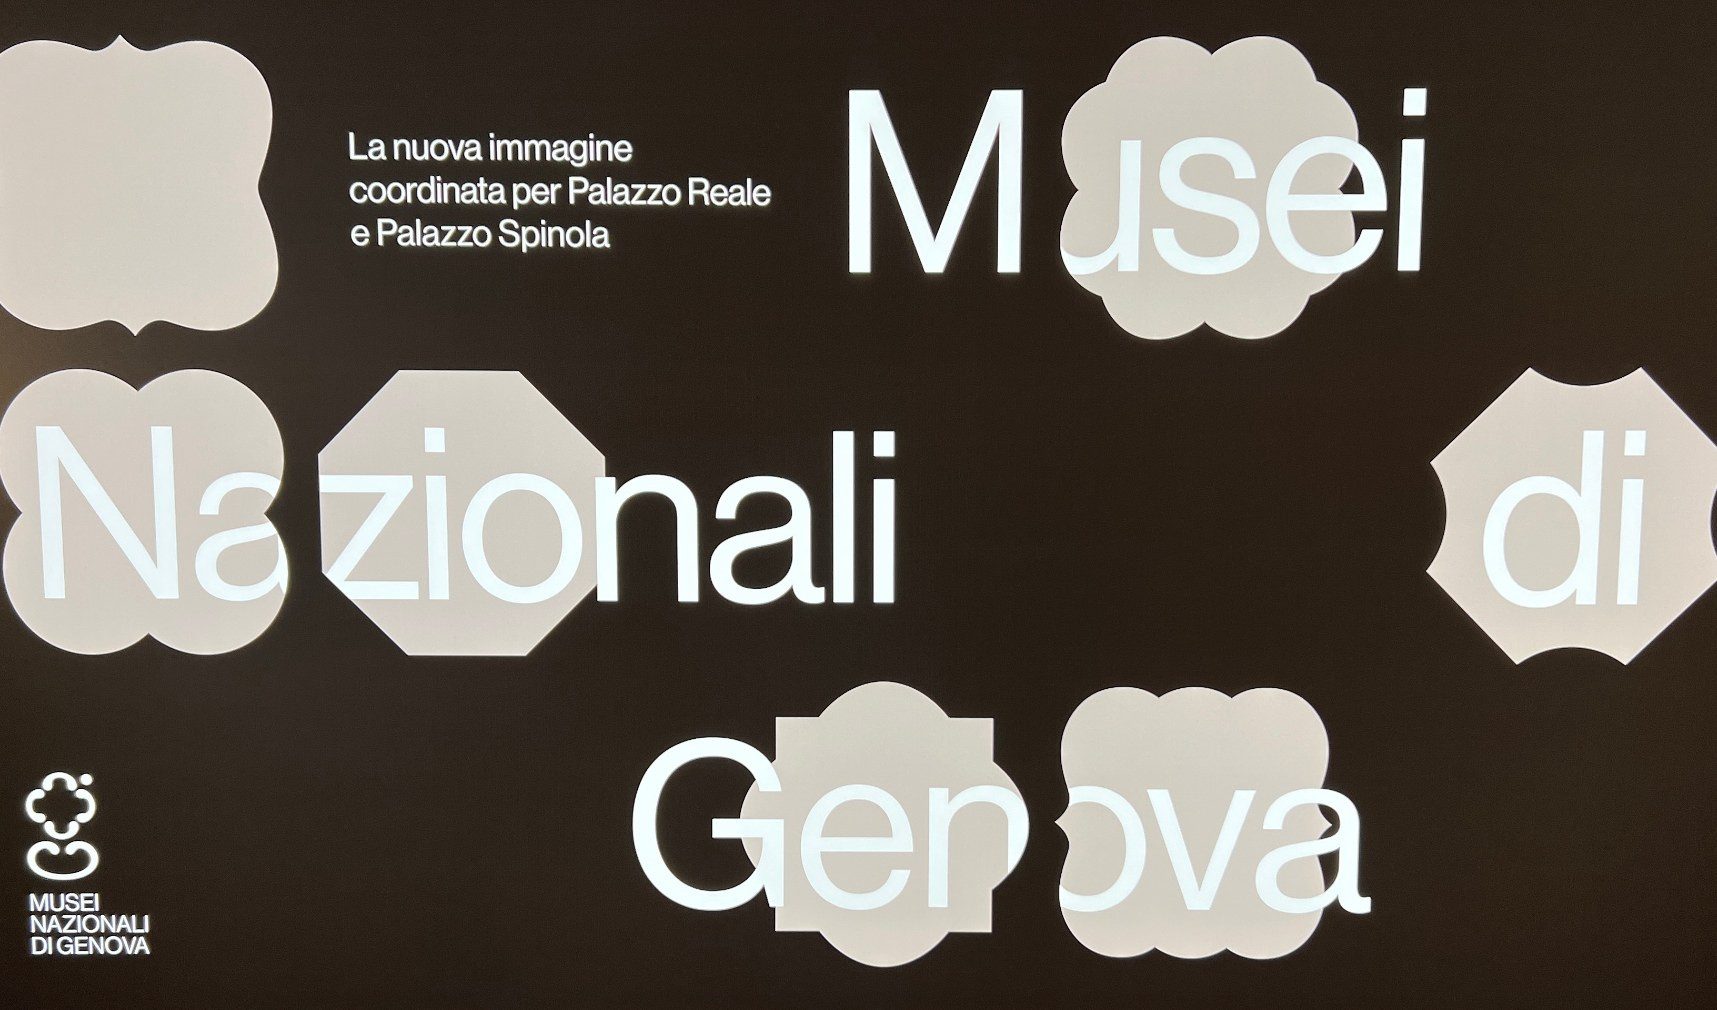 Un unico logo per i musei nazionali di Palazzo Reale e Spinola dalla 'g' di Genova 